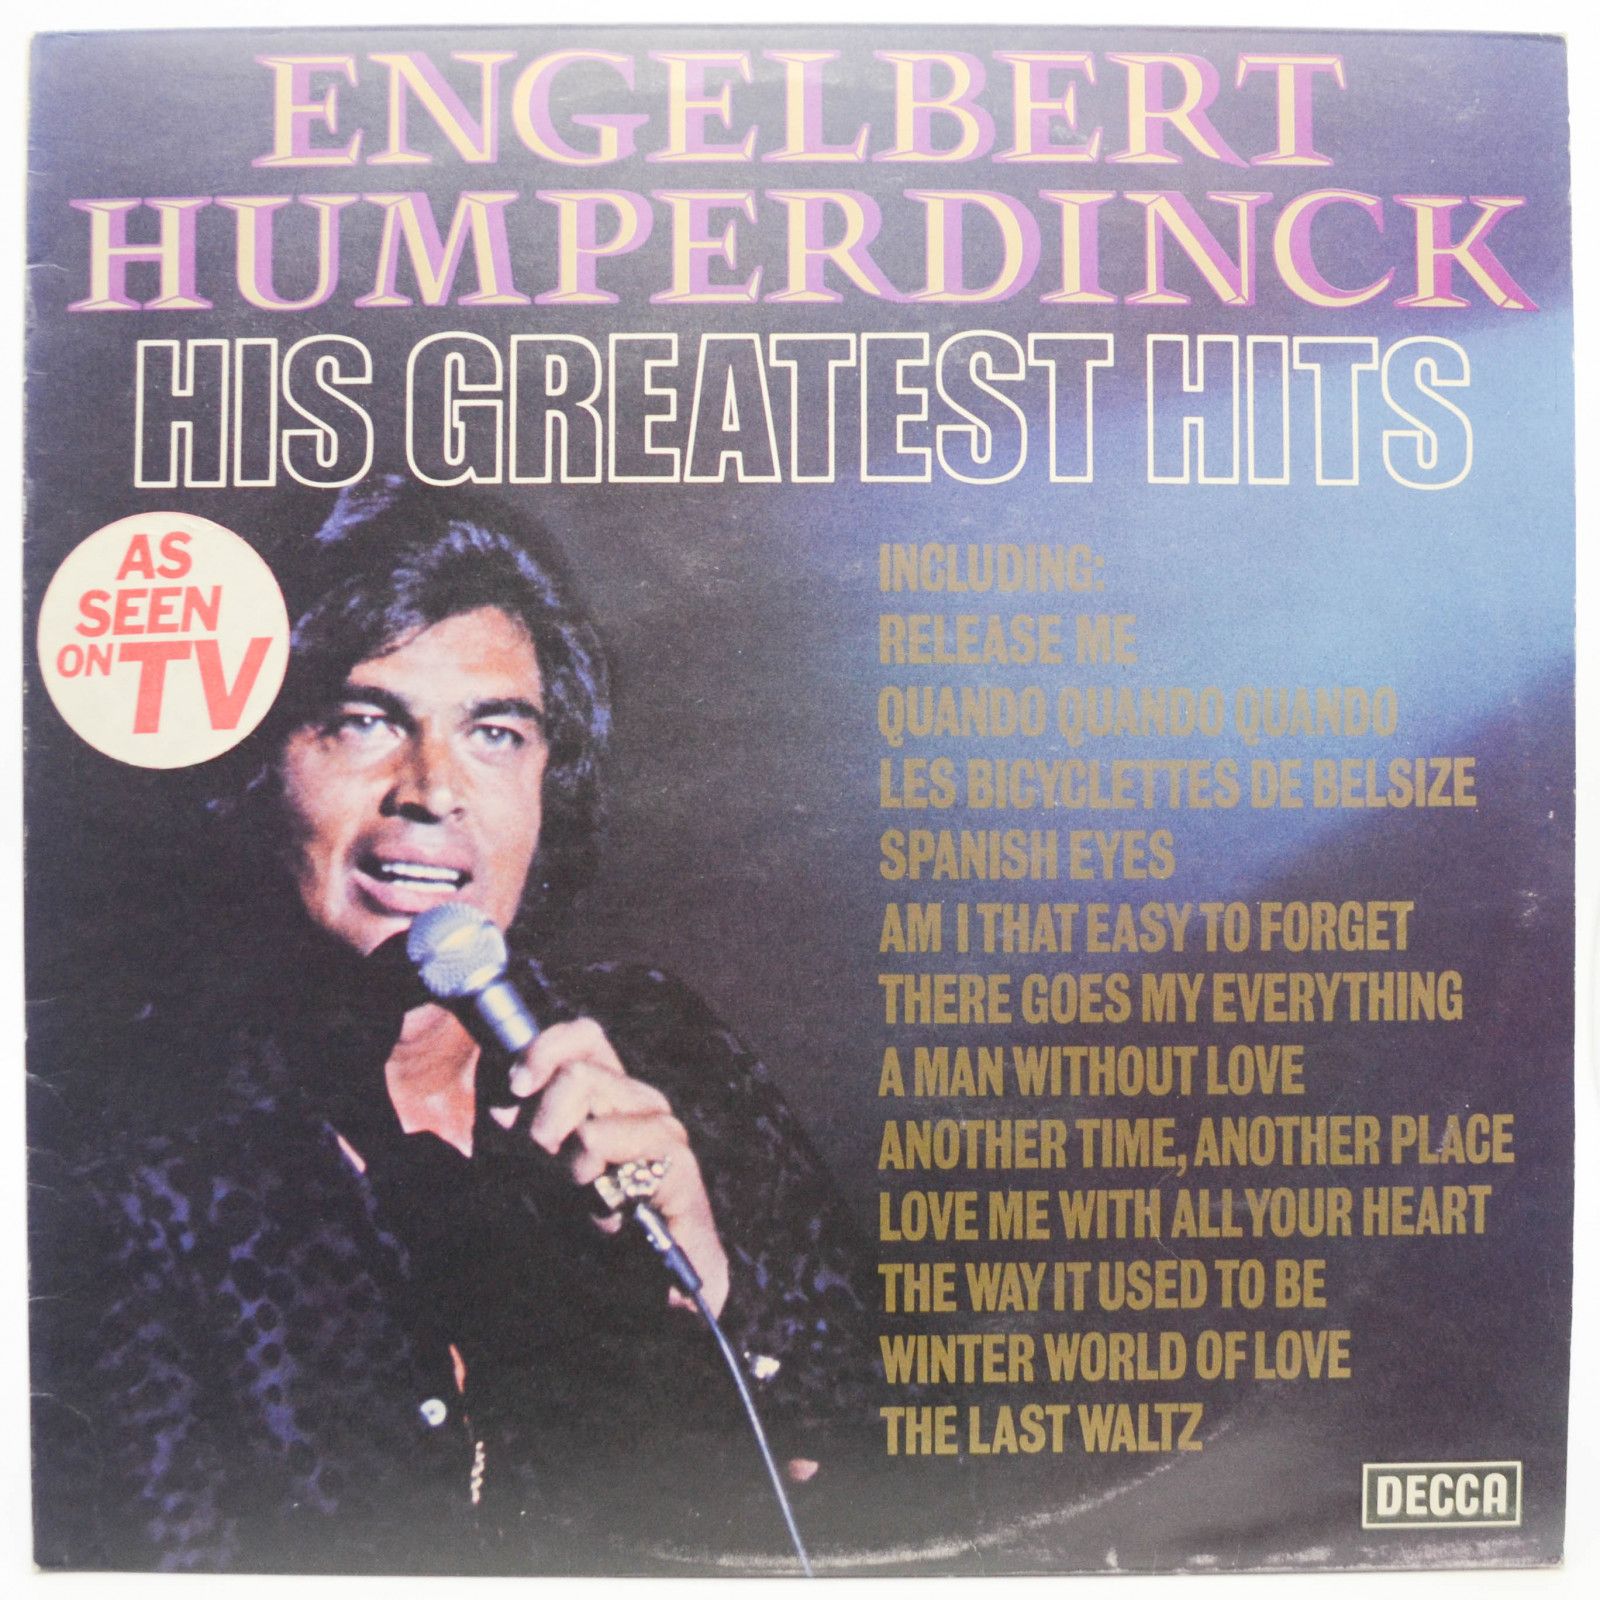 Engelbert Humperdinck — His Greatest Hits (UK), 1974